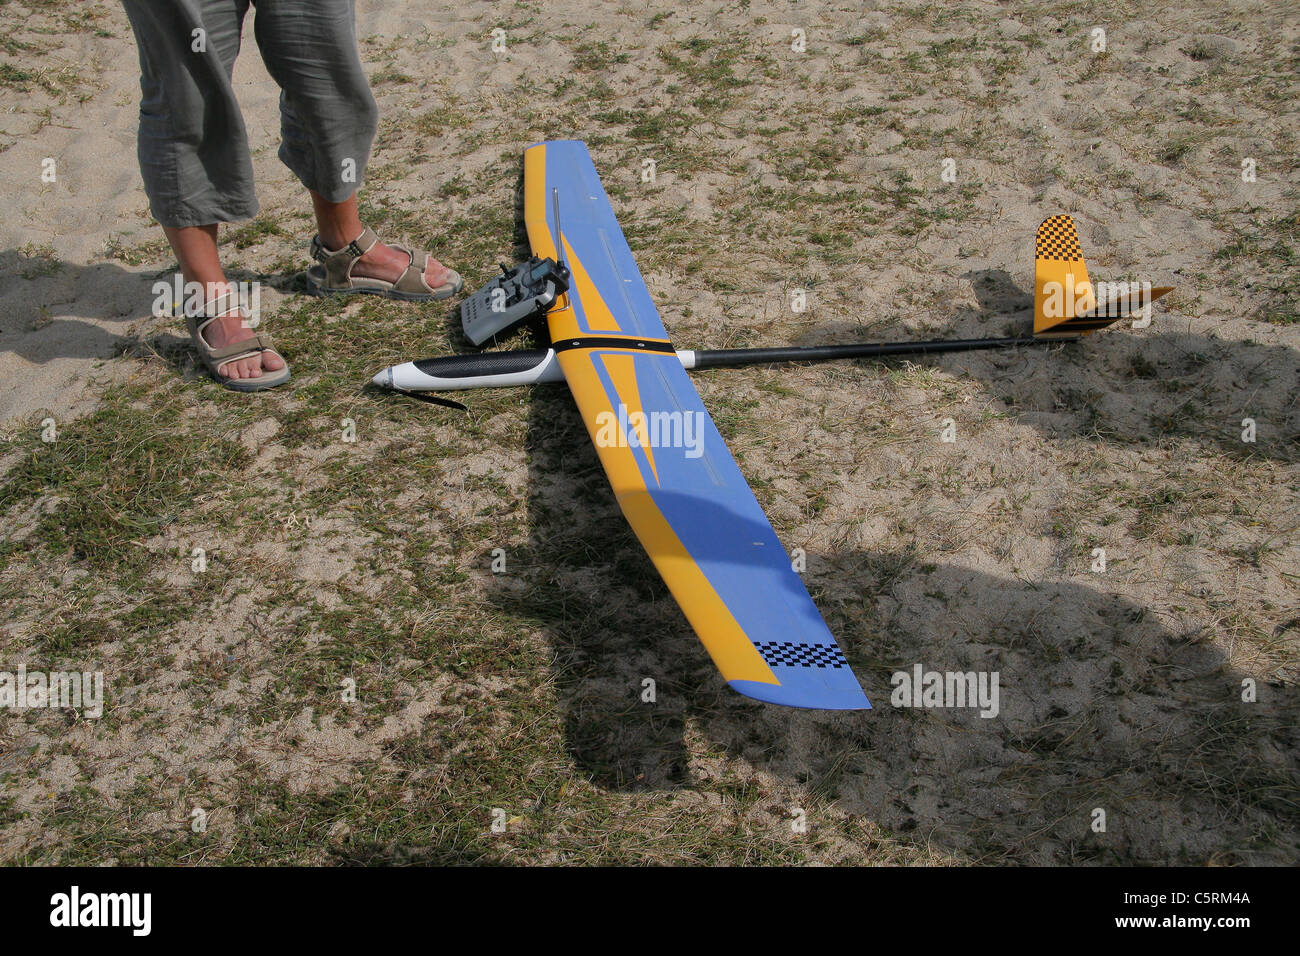 Funk-Segelflugzeug (Segelflugzeug Modell) auf dem Boden mit der Fernbedienung. Stockfoto